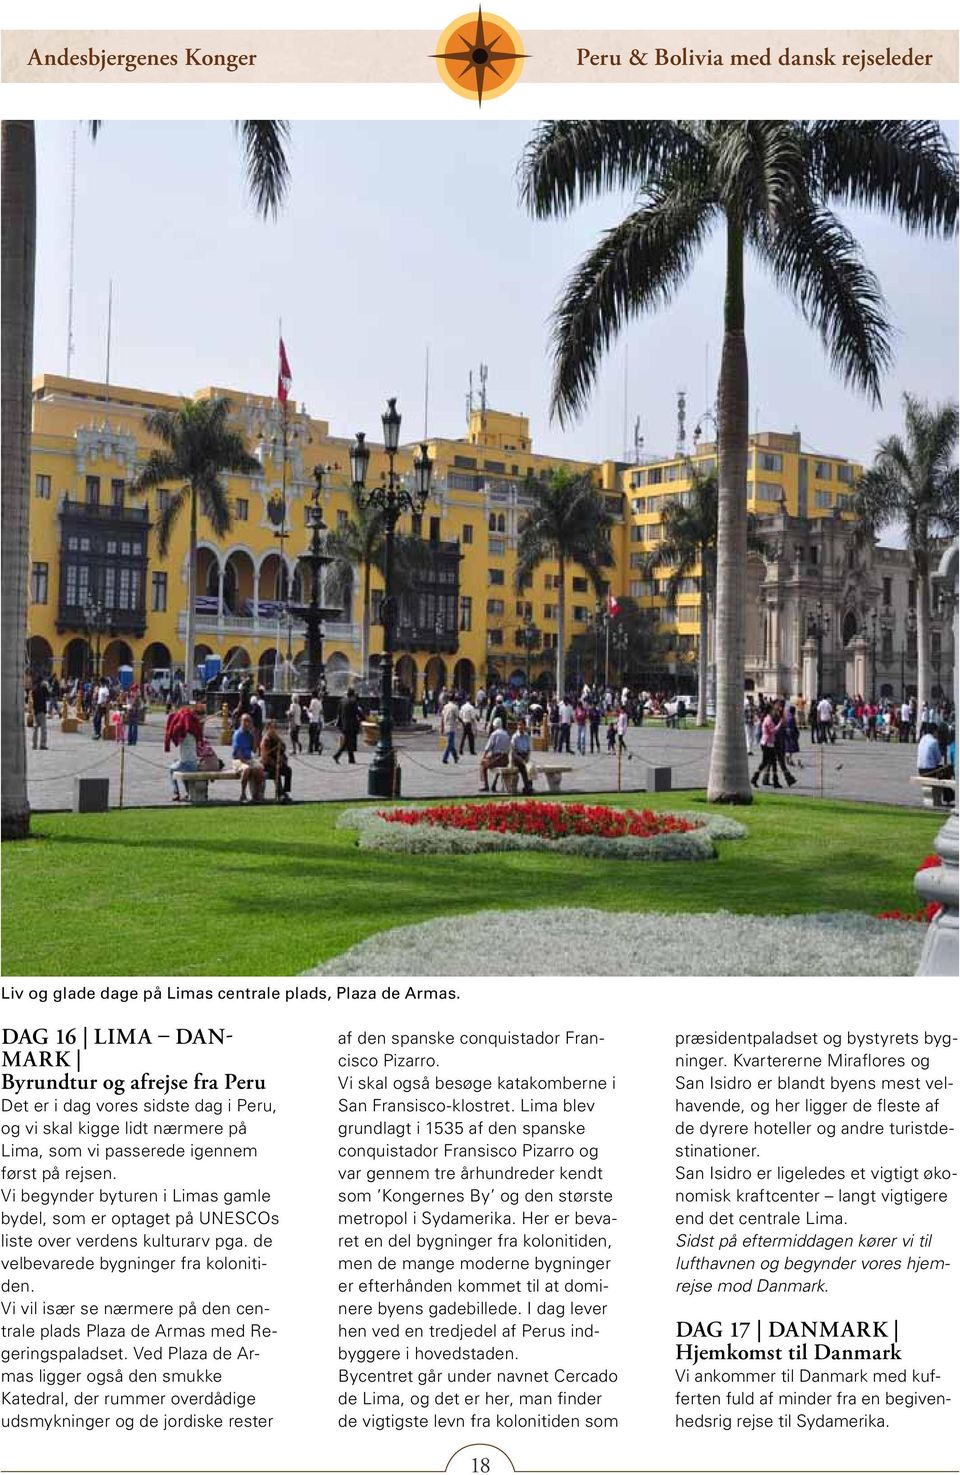 Vi begynder byturen i Limas gamle bydel, som er optaget på UNESCOs liste over verdens kulturarv pga. de velbevarede bygninger fra kolonitiden.